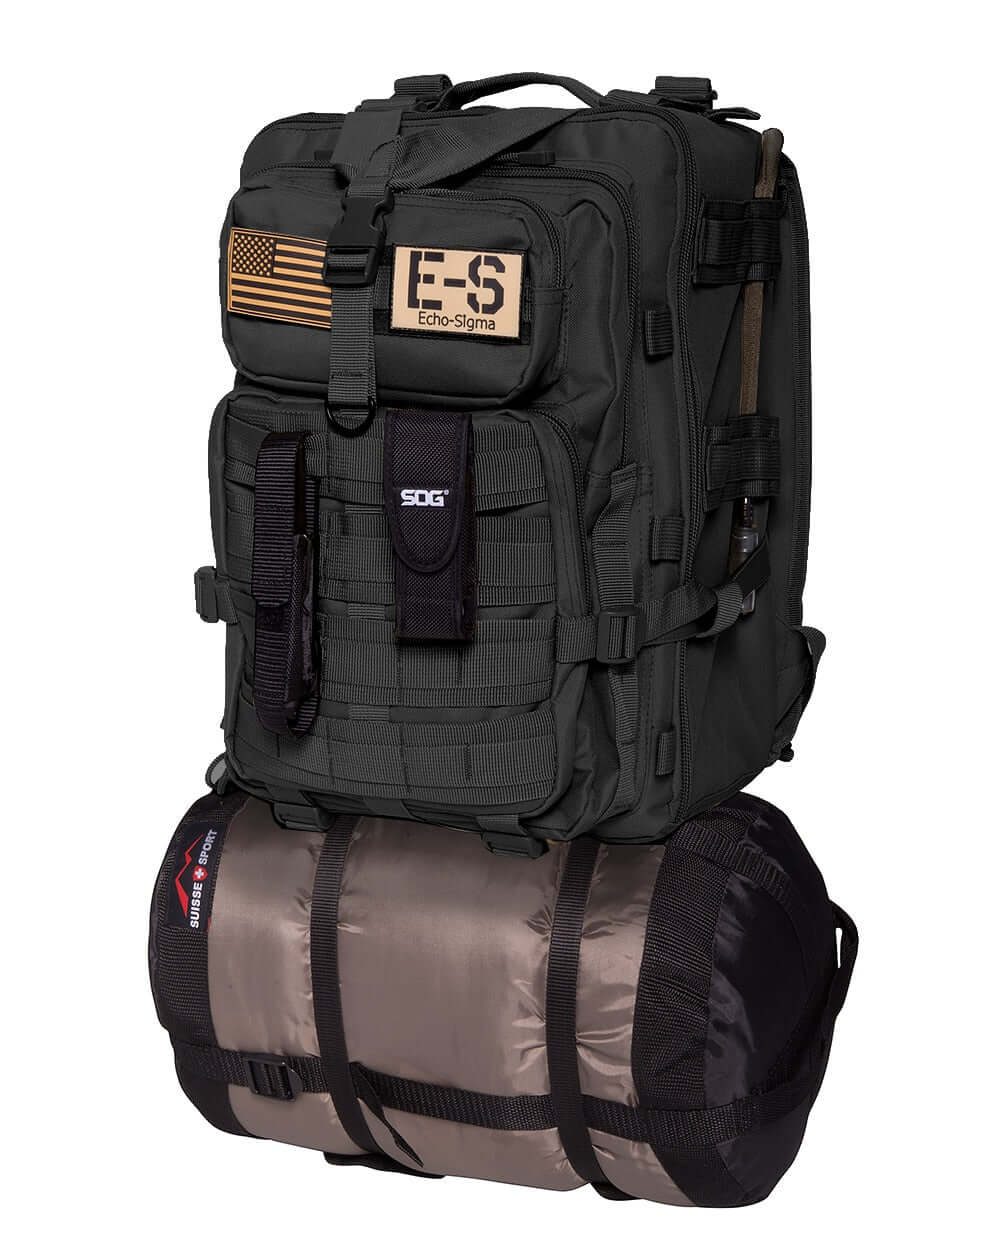 Echo-Sigma Emergency Bug Out Bag (Black)